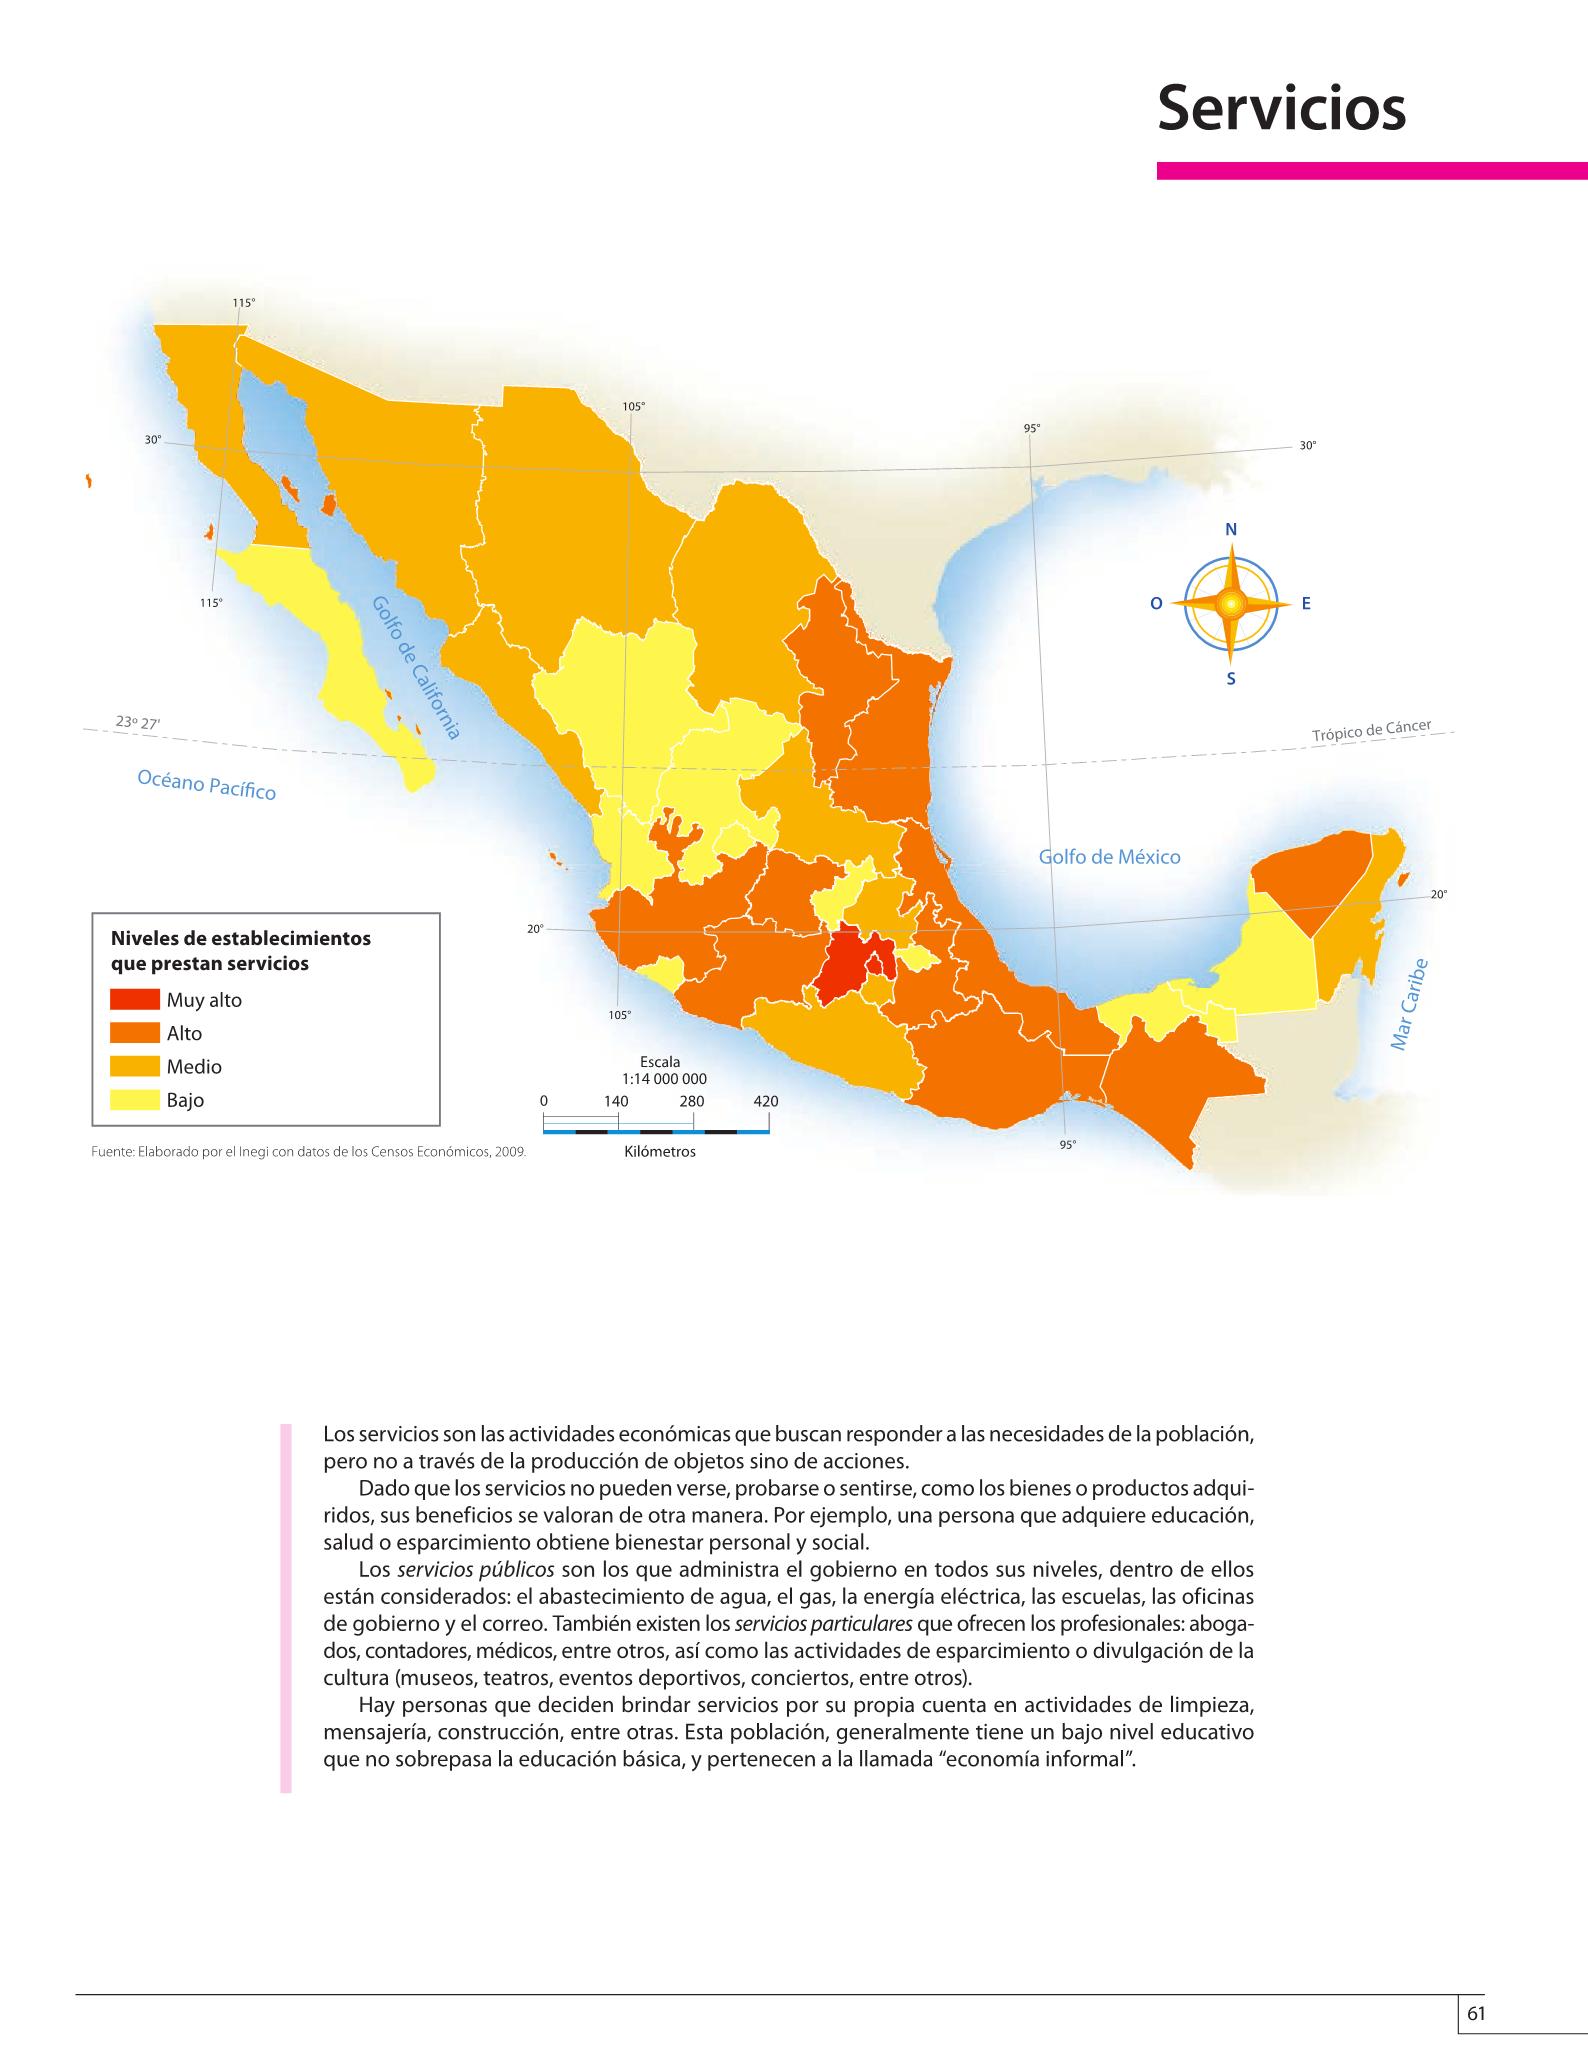 Atlas De 6To Grado 2020 / Geografia Libro De Primaria Grado 6 Comision Nacional De Libros De ...